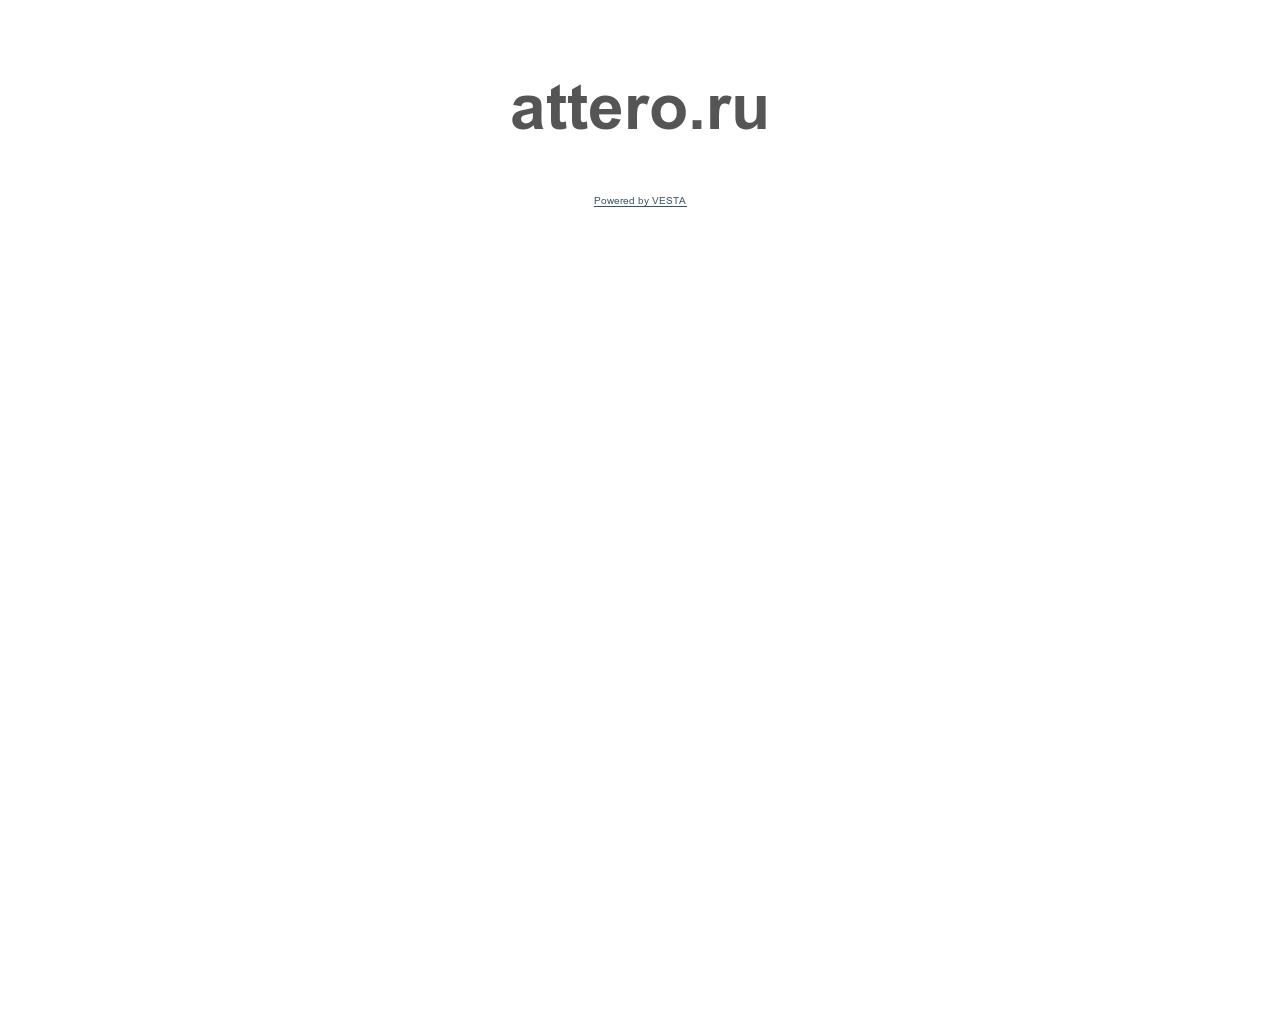 Изображение сайта attero.ru в разрешении 1280x1024